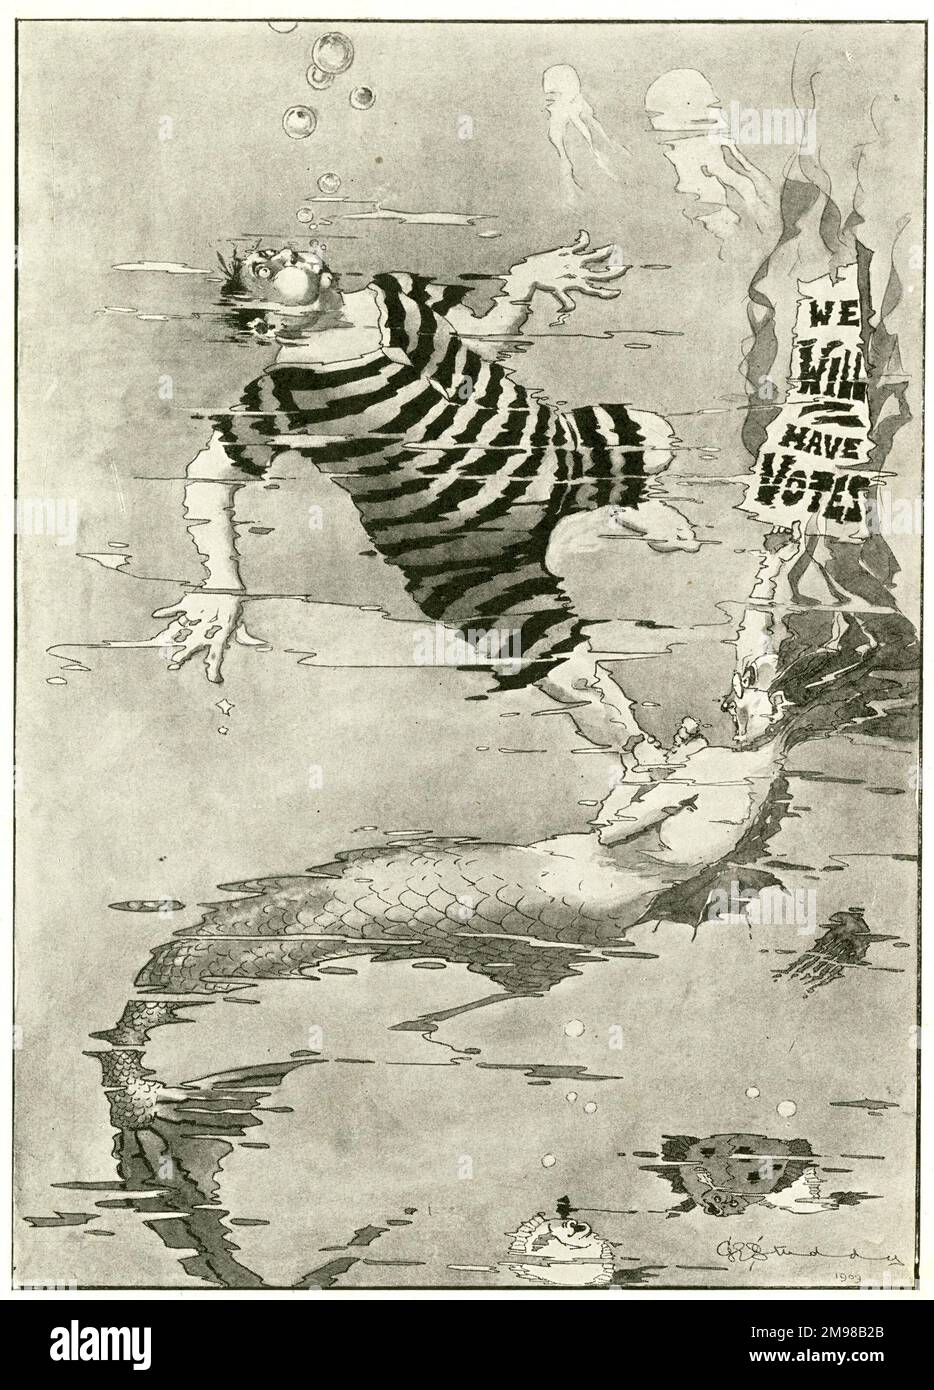 Caricature, Un avertissement saisonnier, Méfiez-vous des députés - un commentaire sur la campagne votes pour les femmes. Date: 1909 Banque D'Images